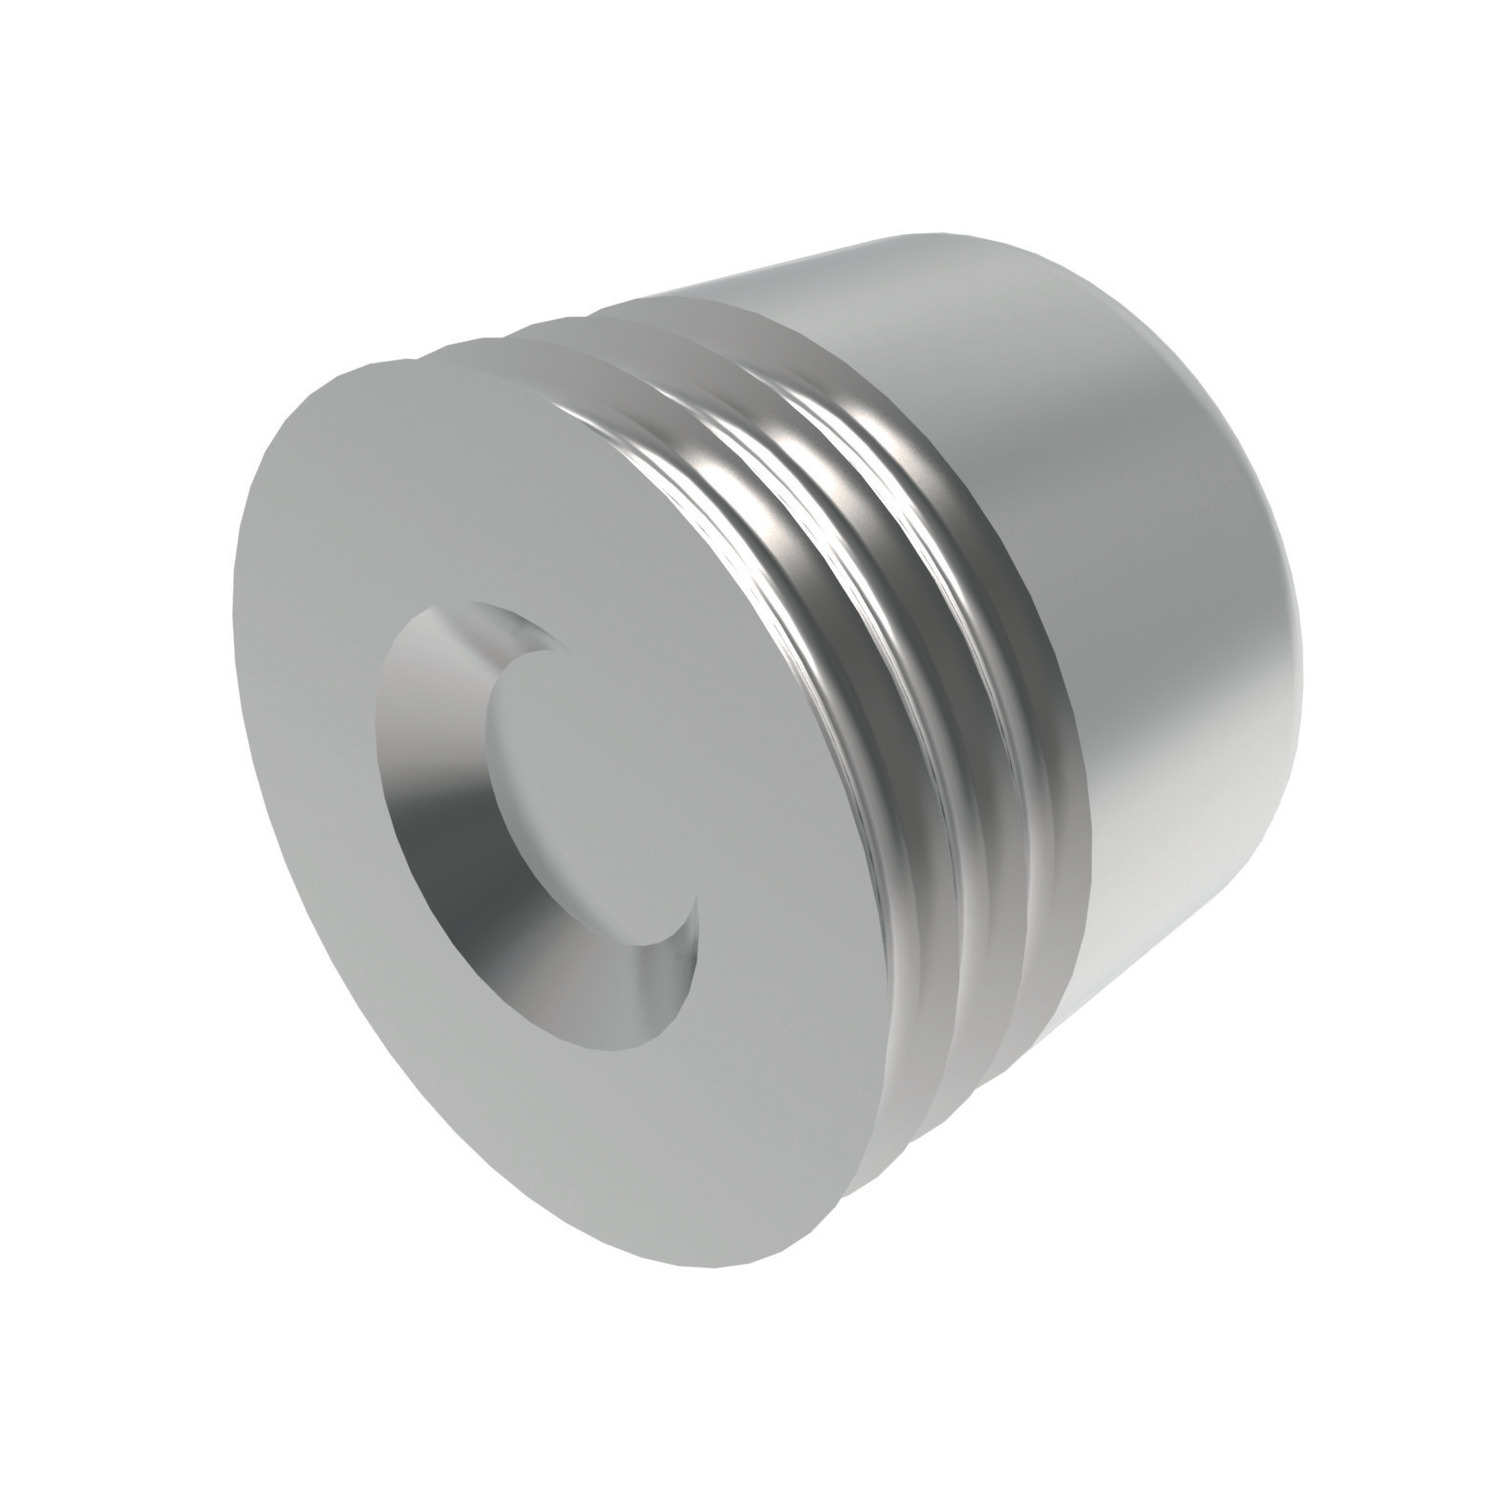 Product P0194, Blocker Sealing Plugs Aluminium / 